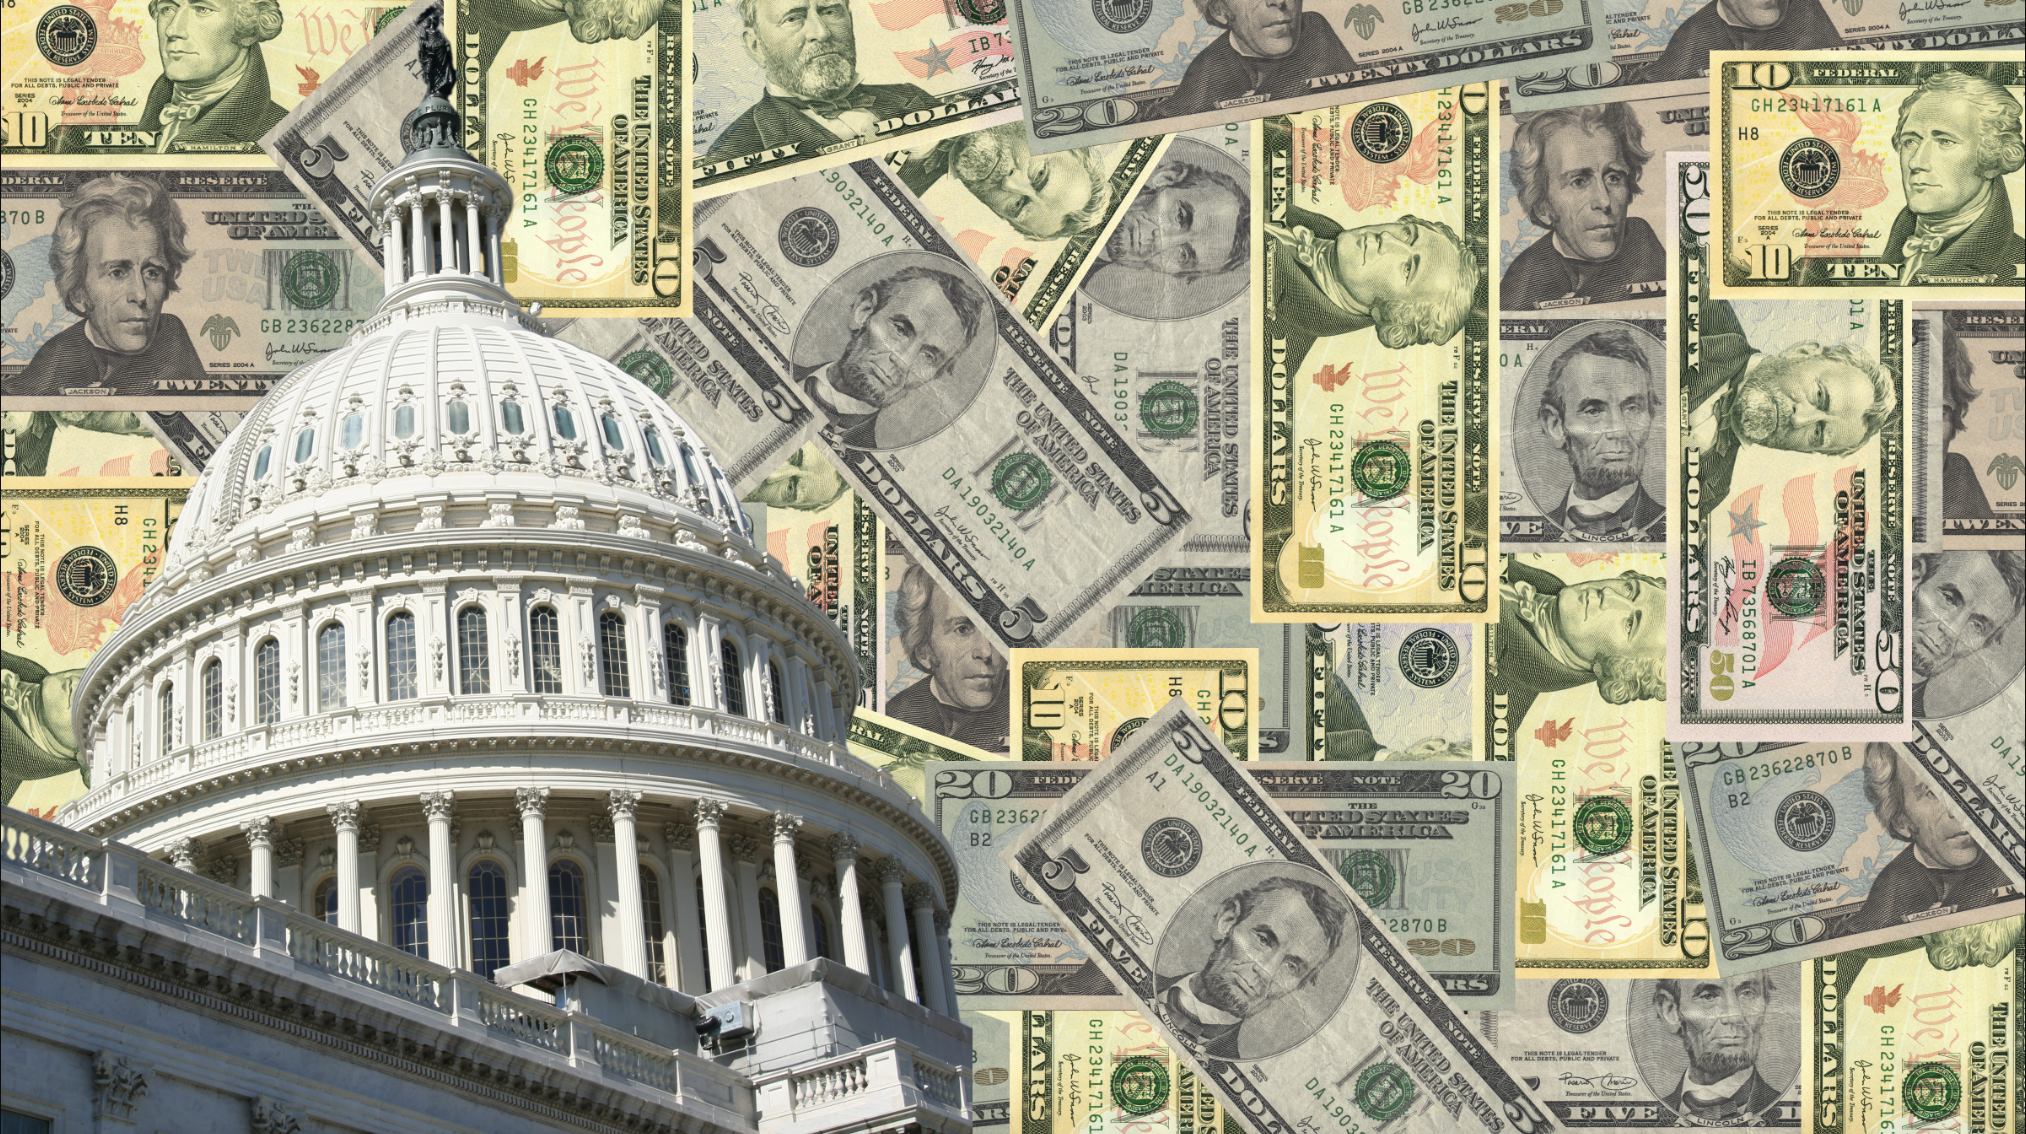 US Capitol and bills